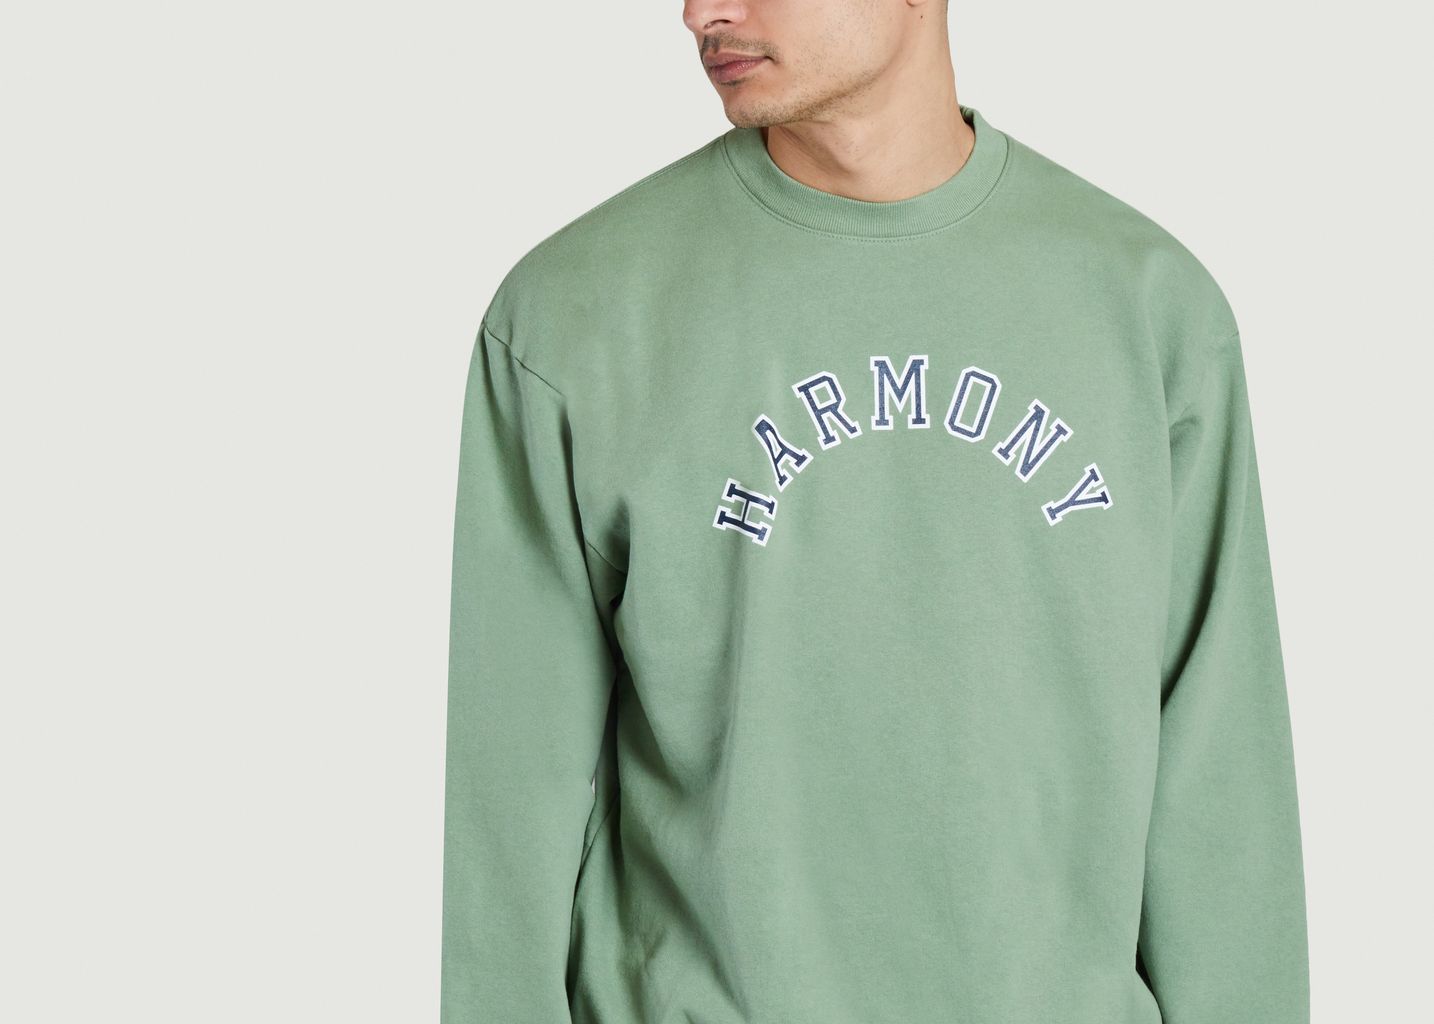 Tennis Club Sweatshirt - Harmony